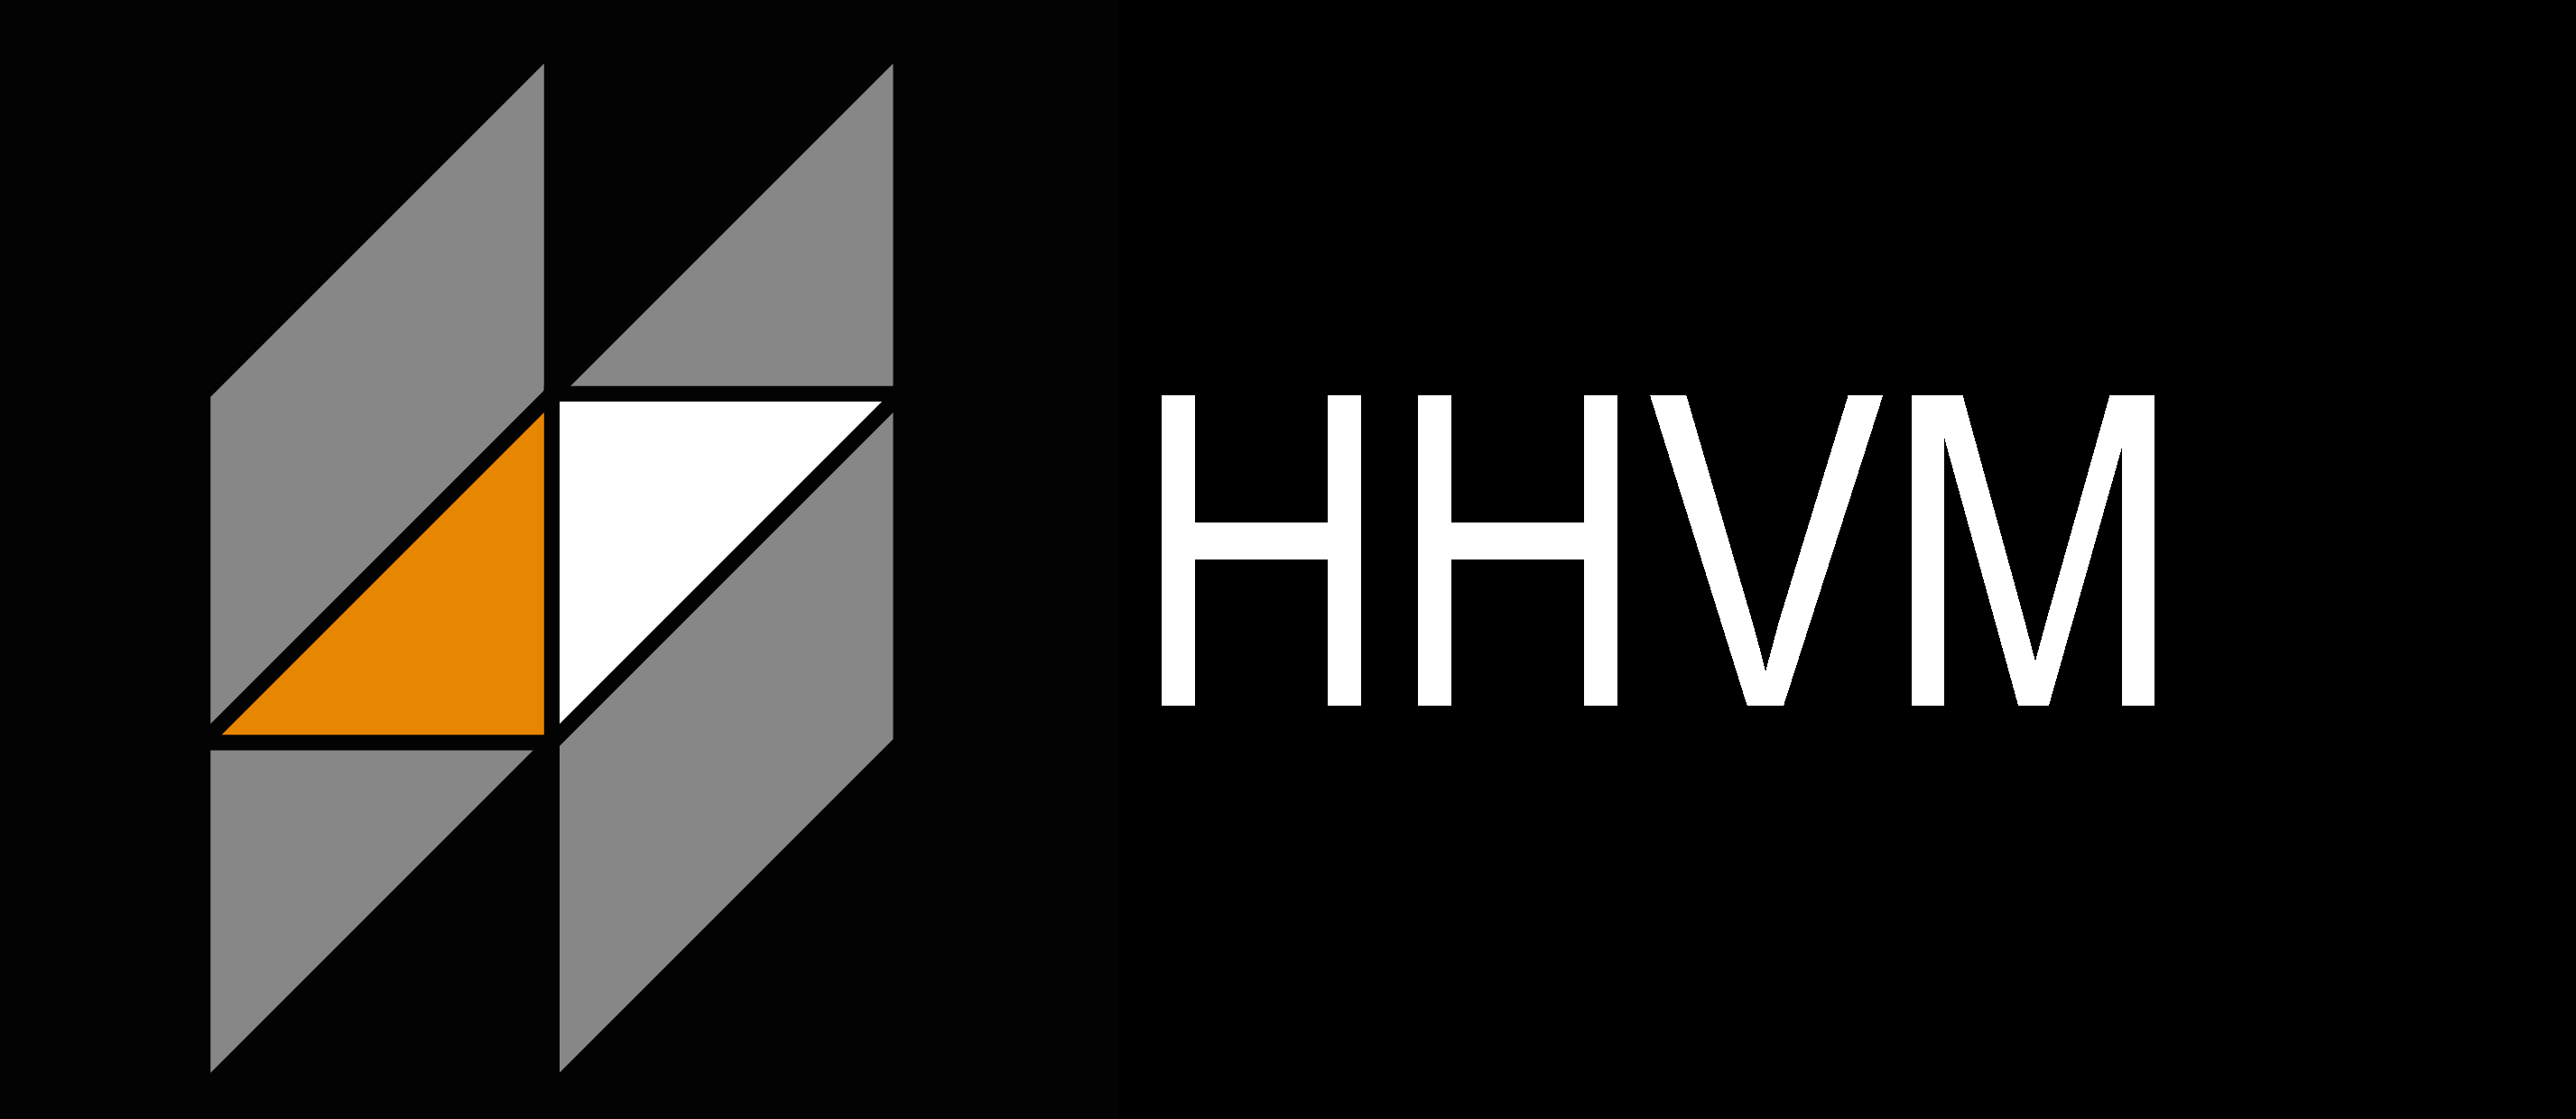 Installer HHVM avec fallback PHP-FPM sous Debian 8 et Nginx